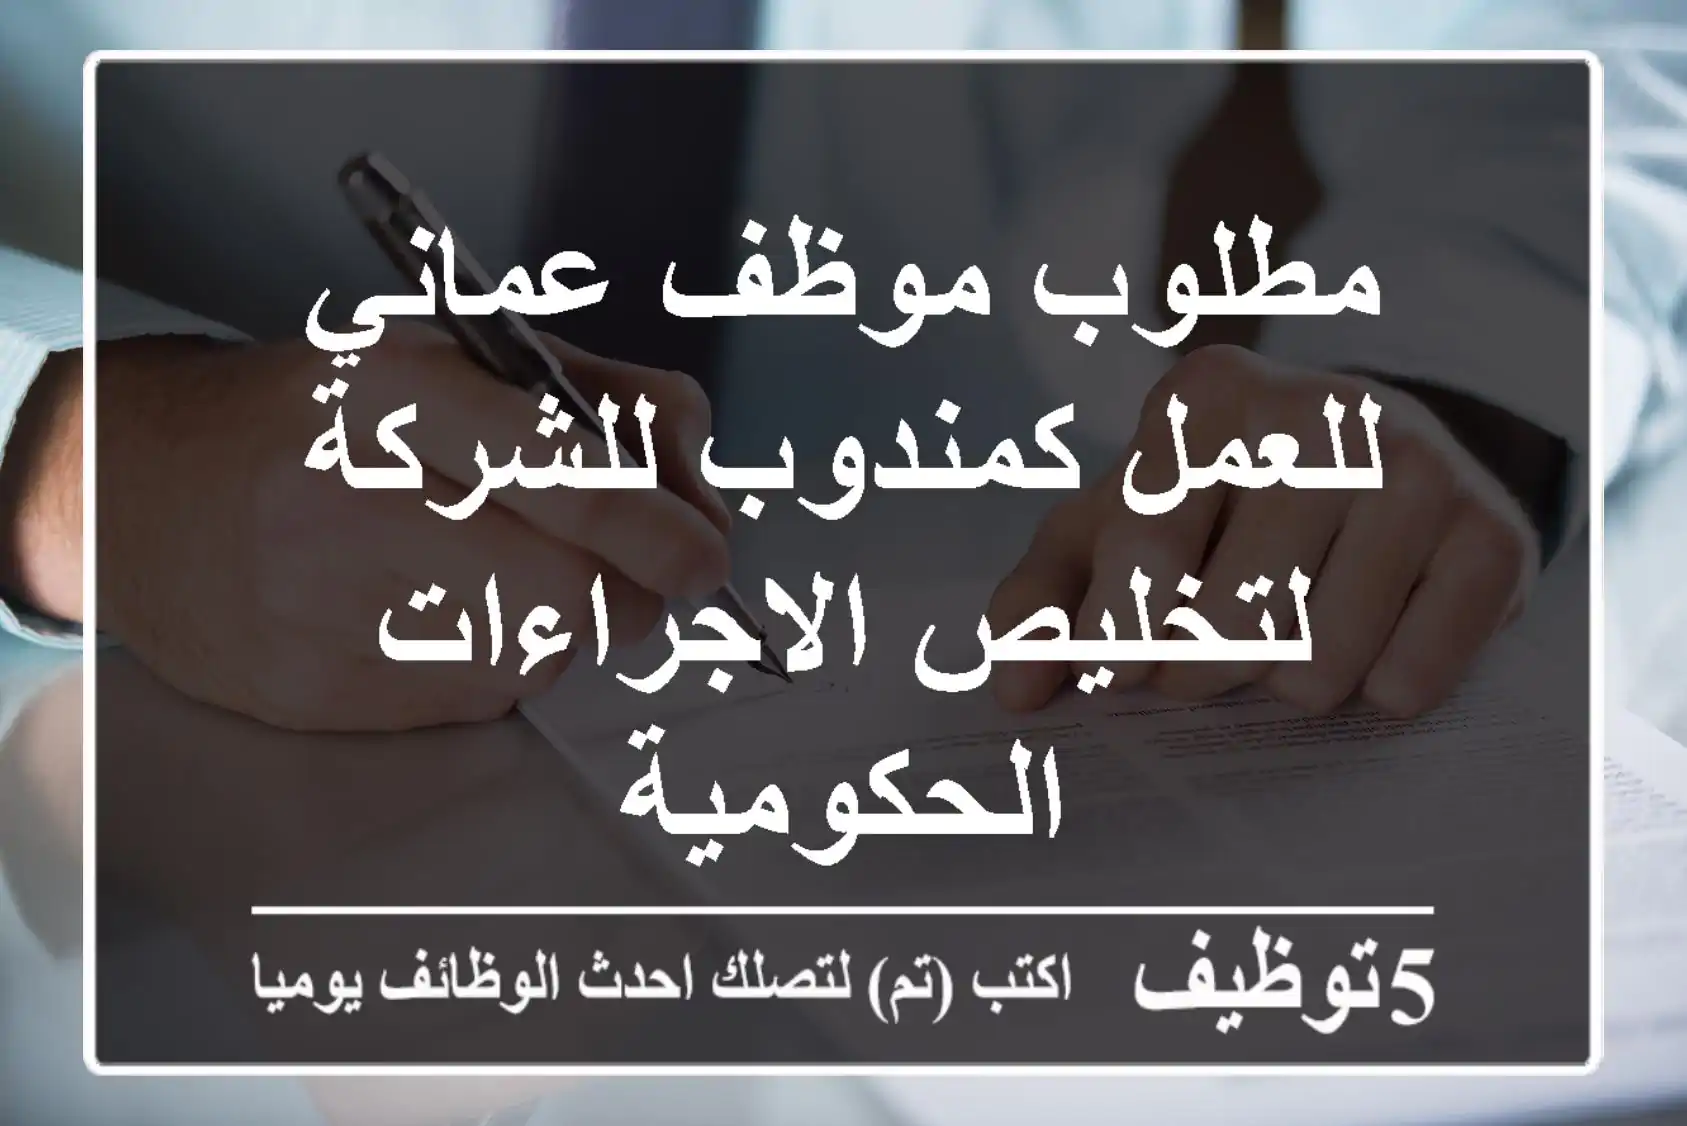 مطلوب موظف عماني للعمل كمندوب للشركة لتخليص الاجراءات الحكومية